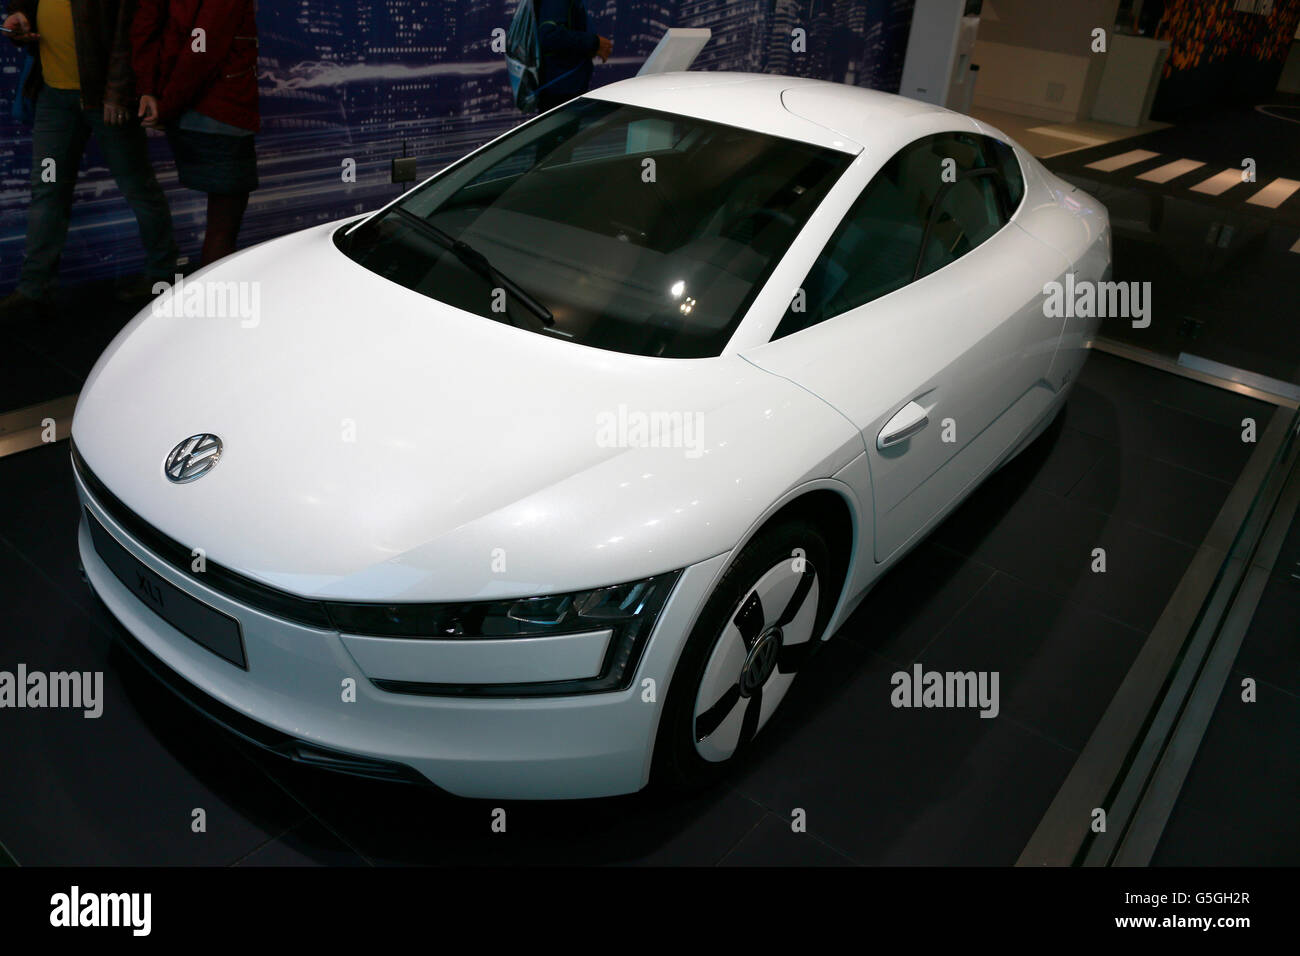 die Studie fuer ein VW/ Volkswagen Auto/ 'Concept Car', Berlin. Stock Photo